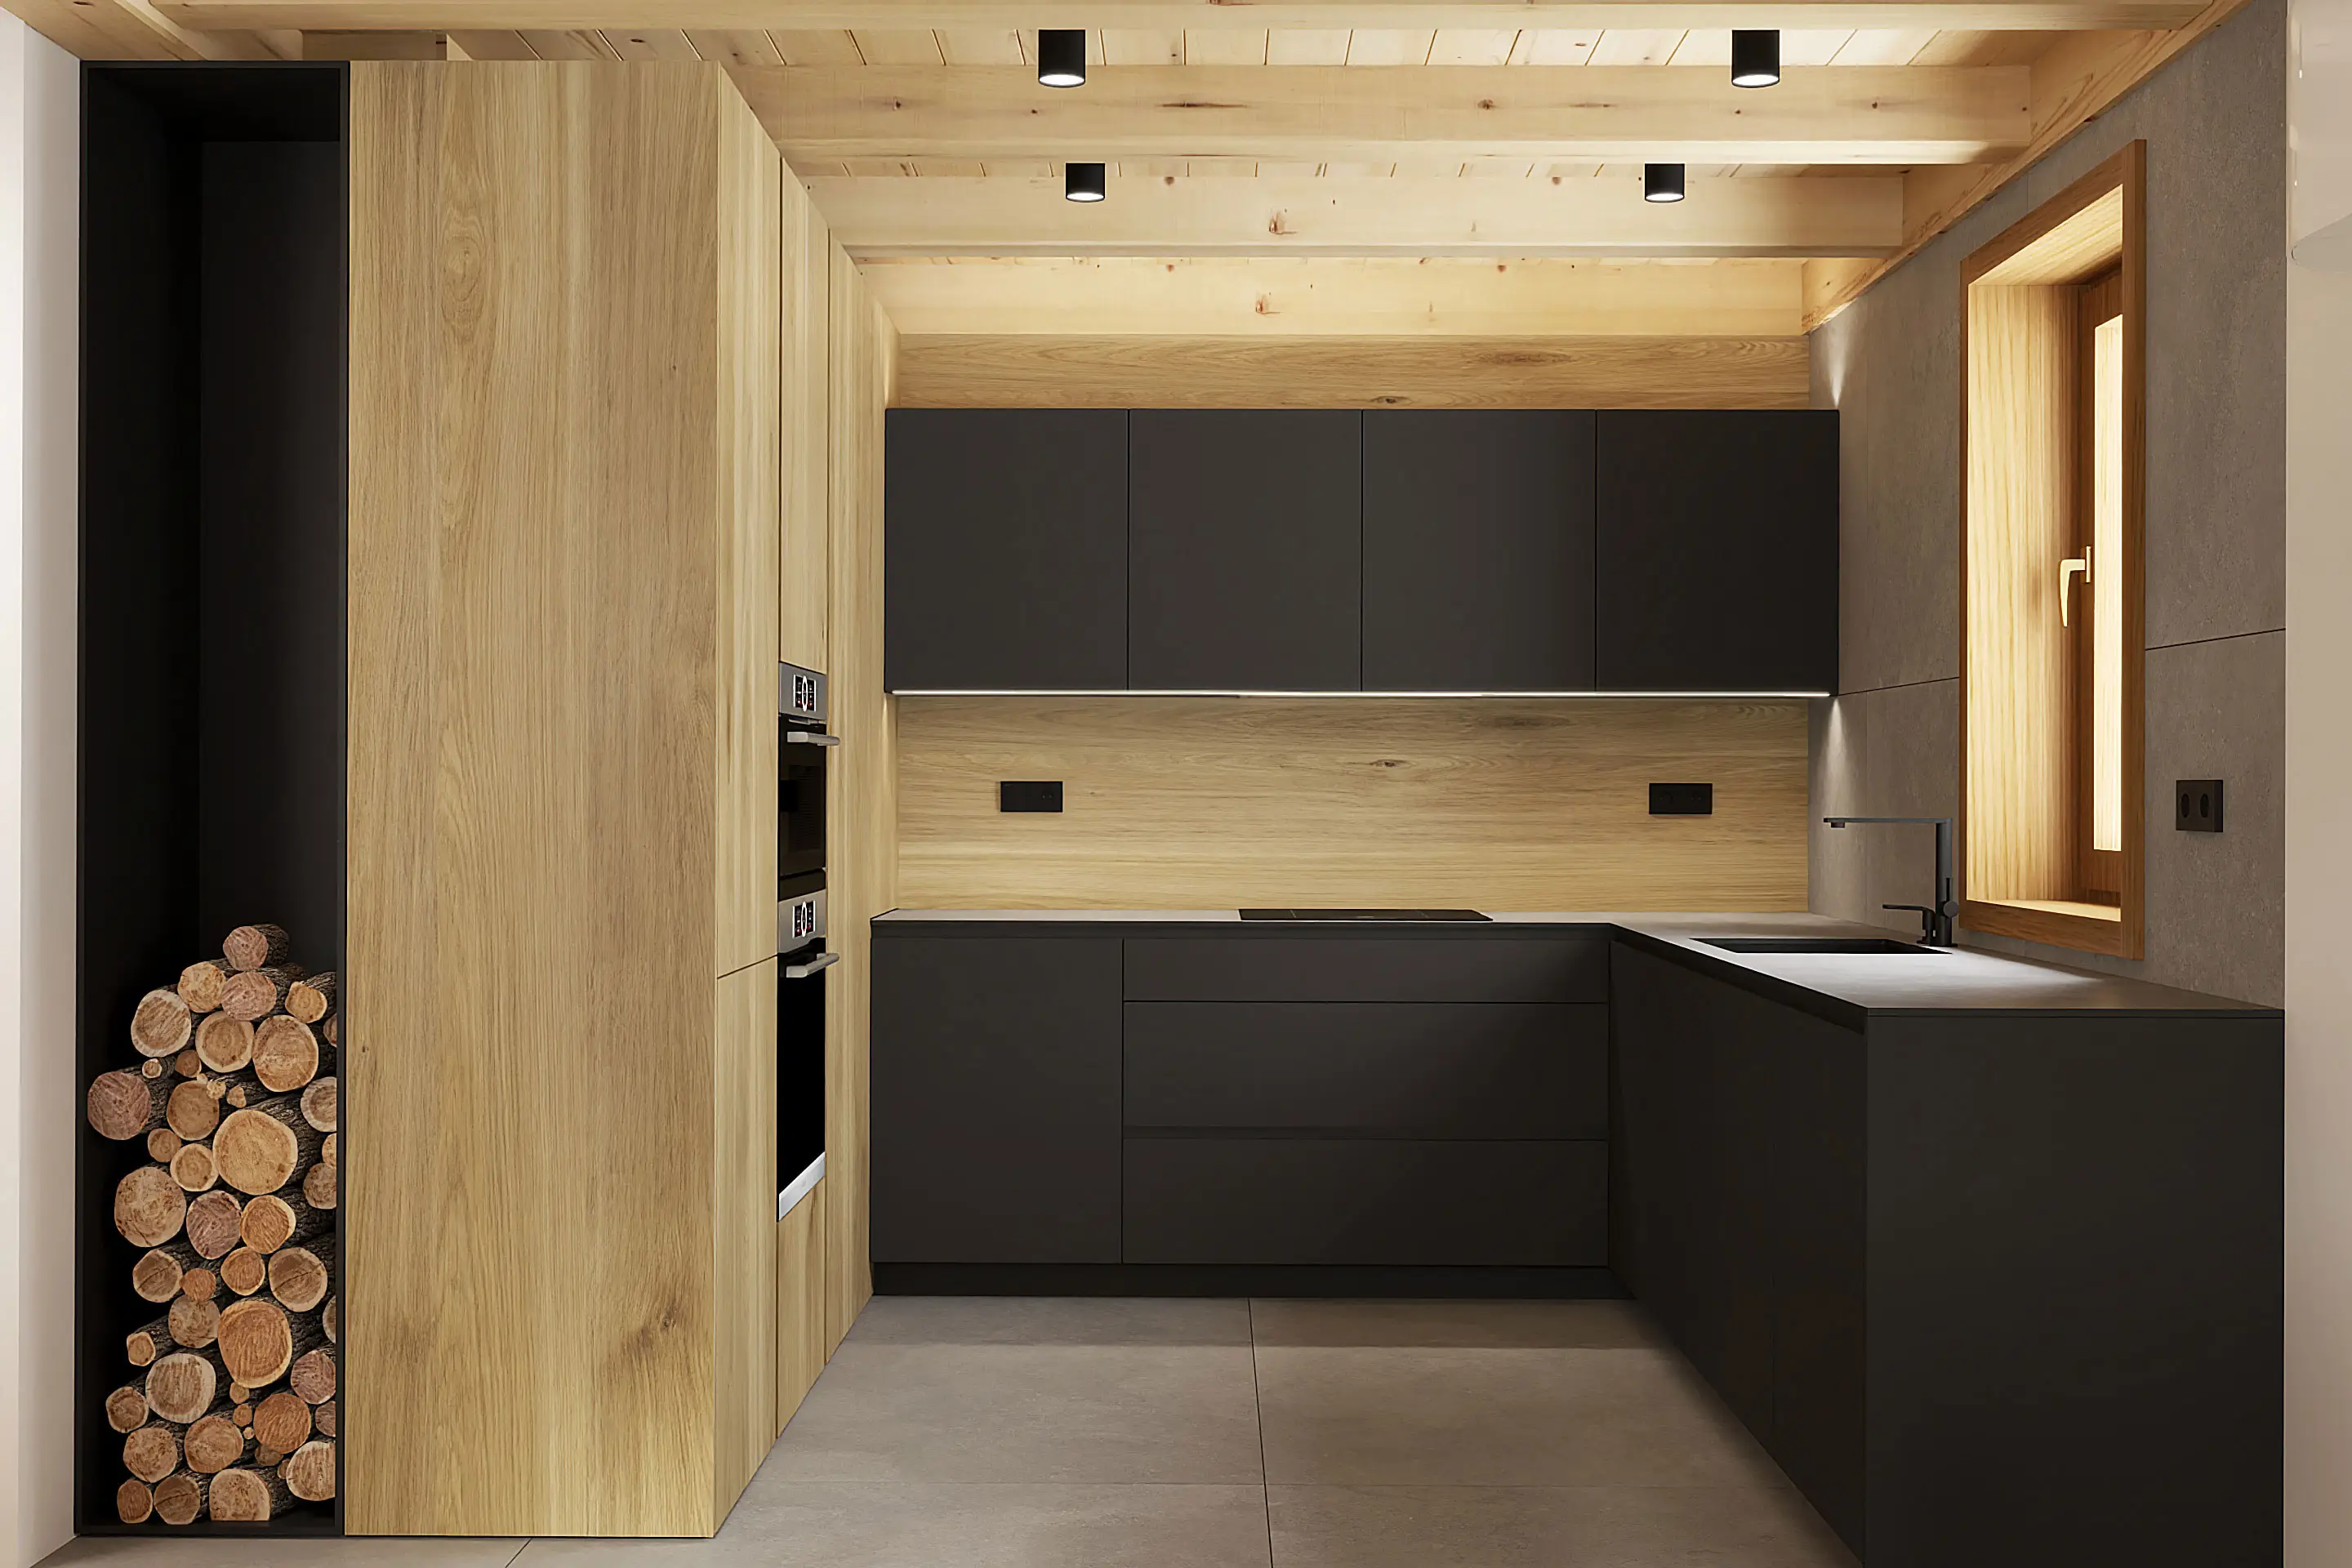 Kuchyňa drevo čierna a kompaktná pracovná doska